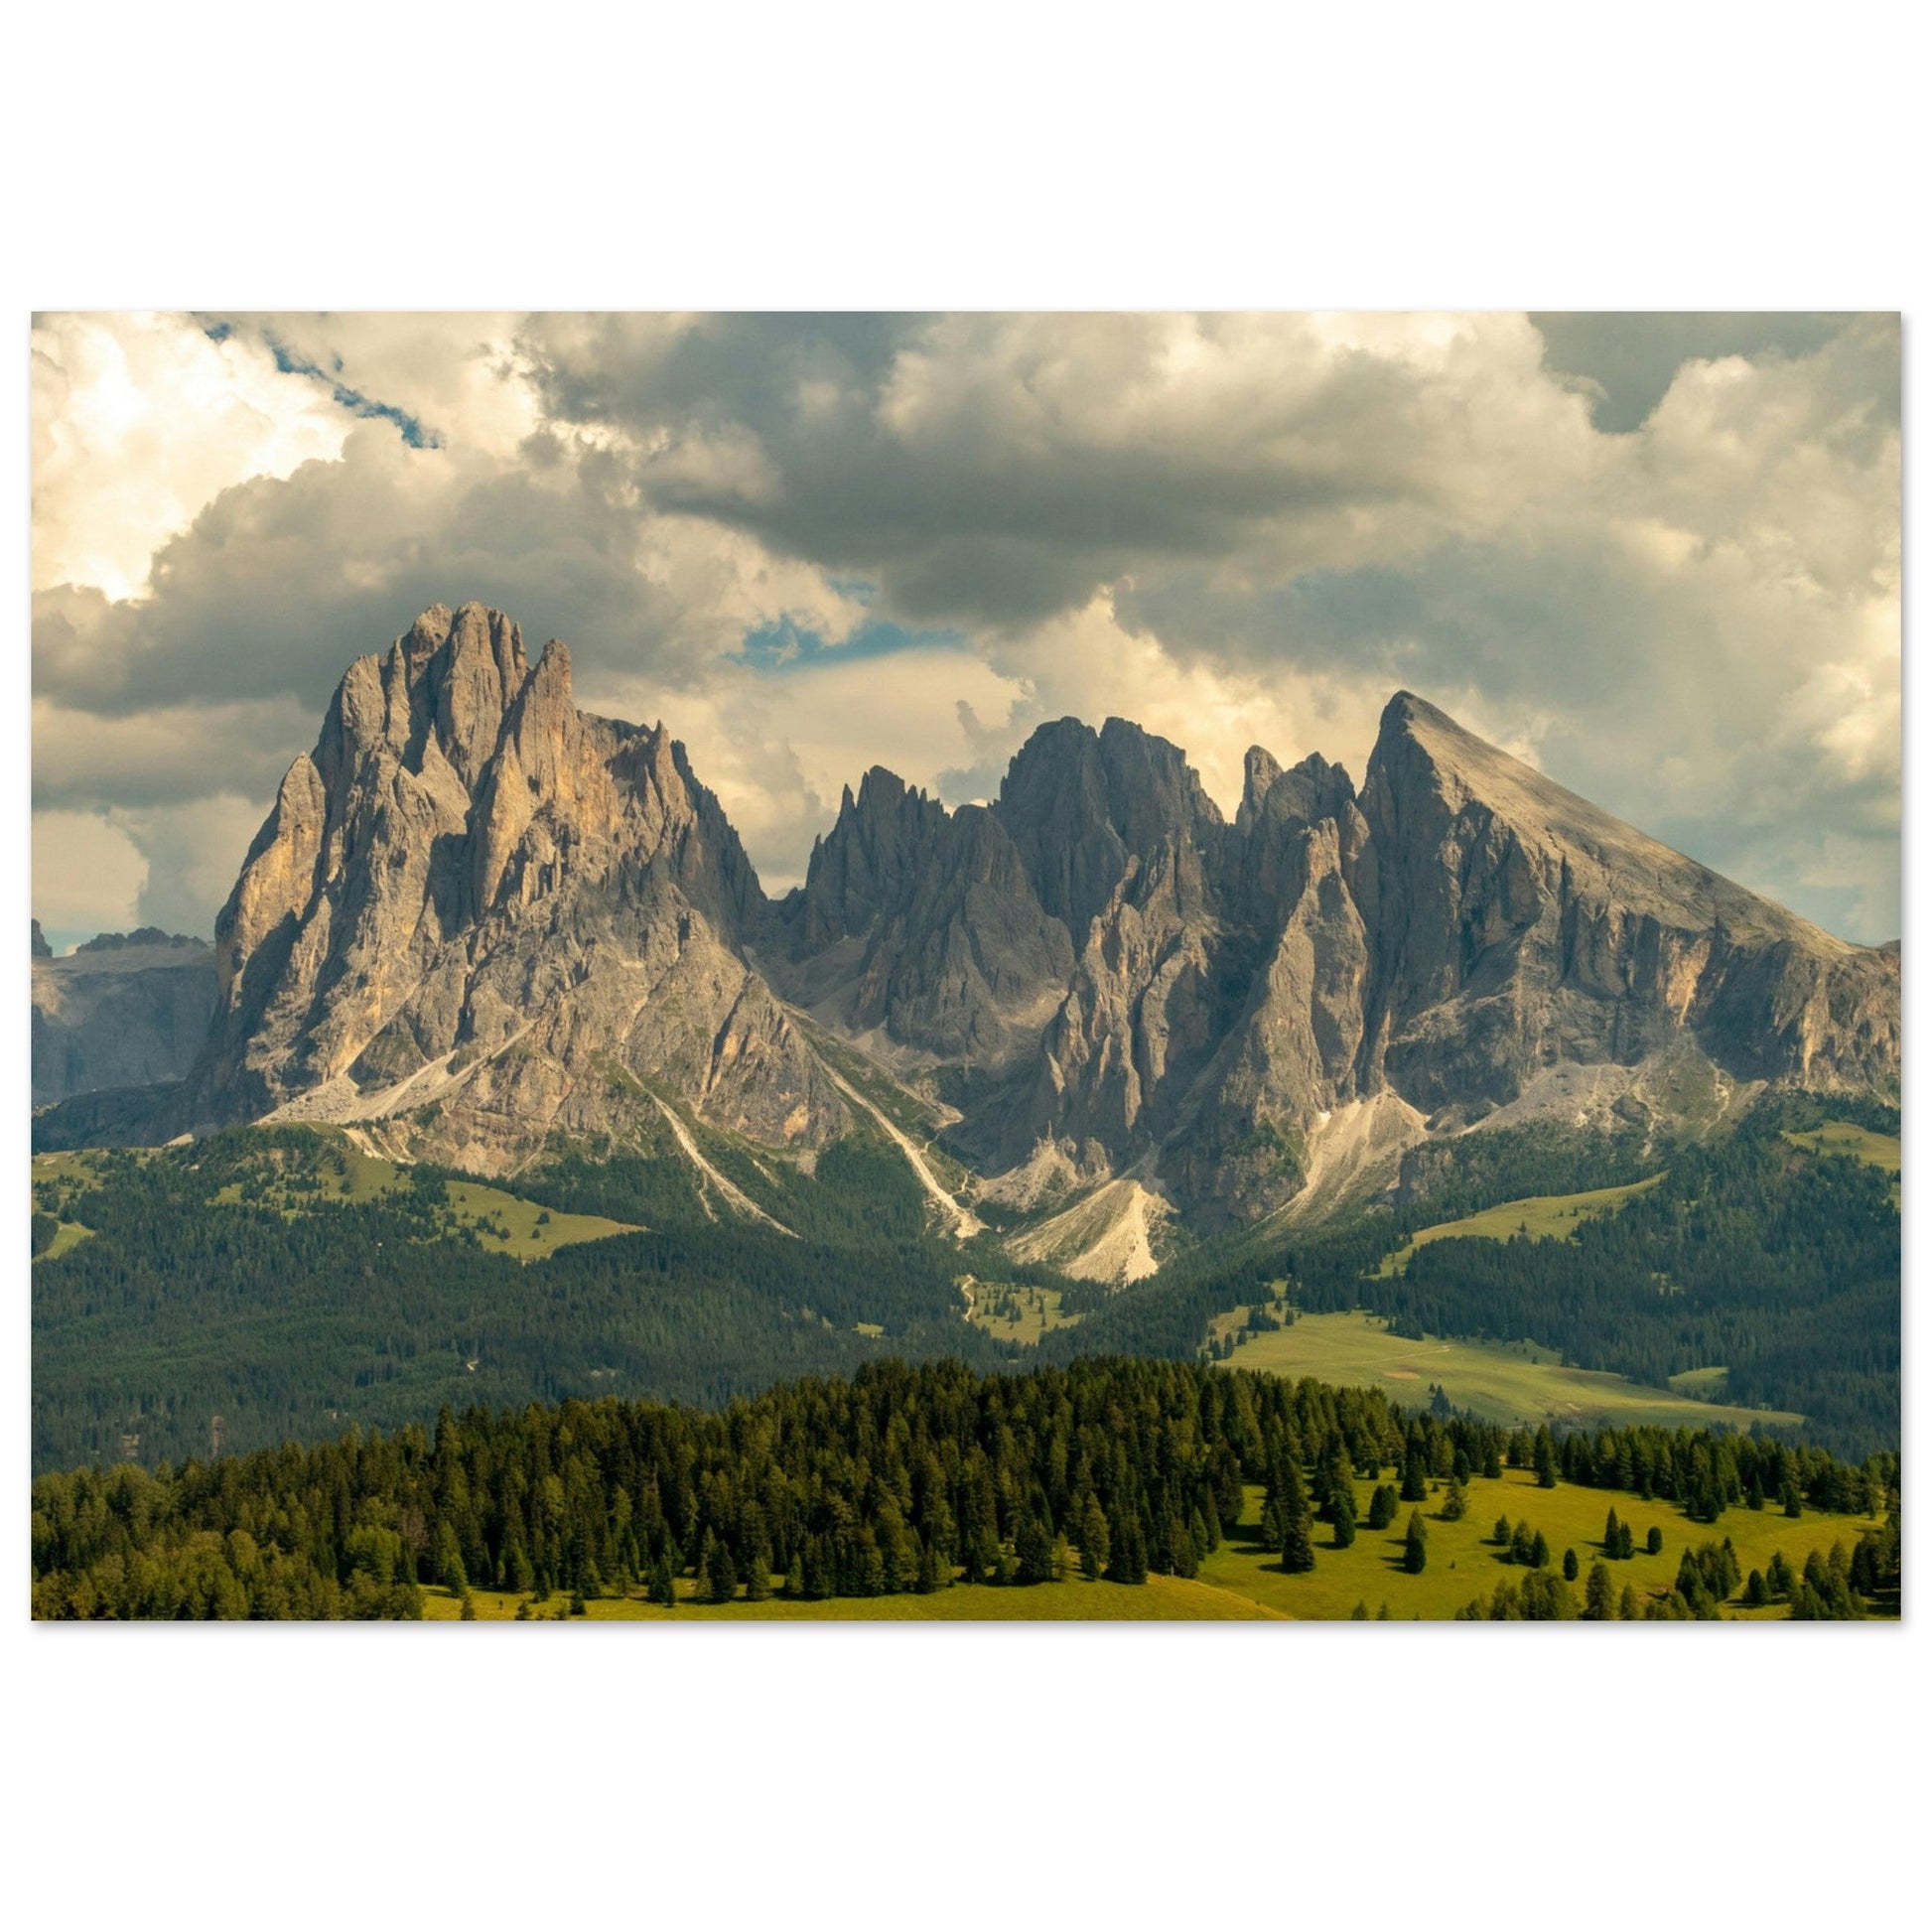 Vente Photo du Sassolungo, Dolomites, Italie - Tableau photo paysage